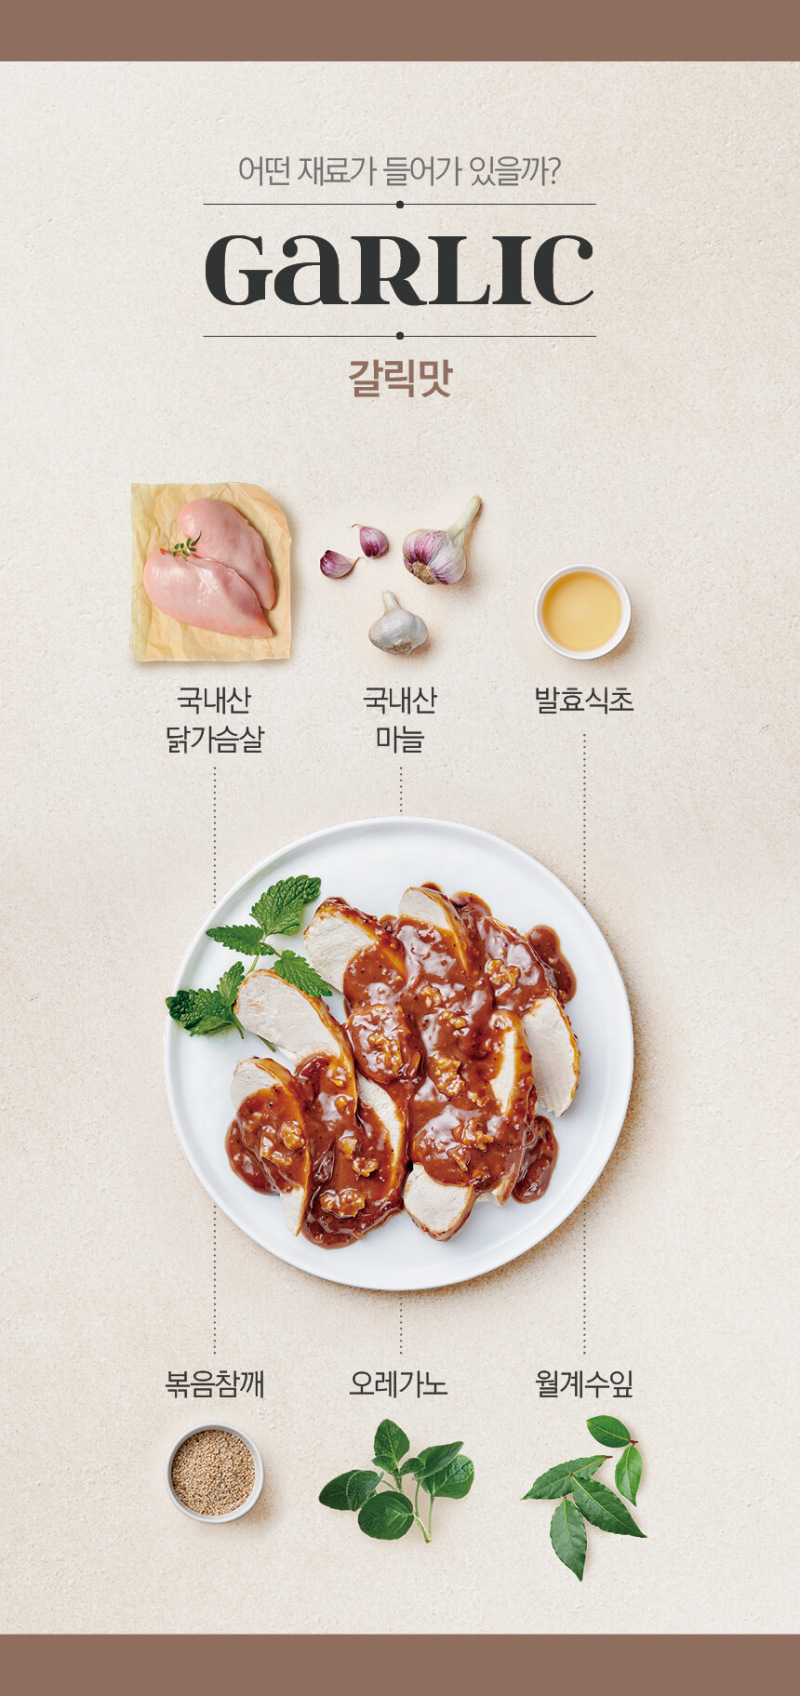 러브잇] 슬라이스 소스 닭가슴살 [갈릭맛] 130G - 홍콩 신세계마트 E Shop